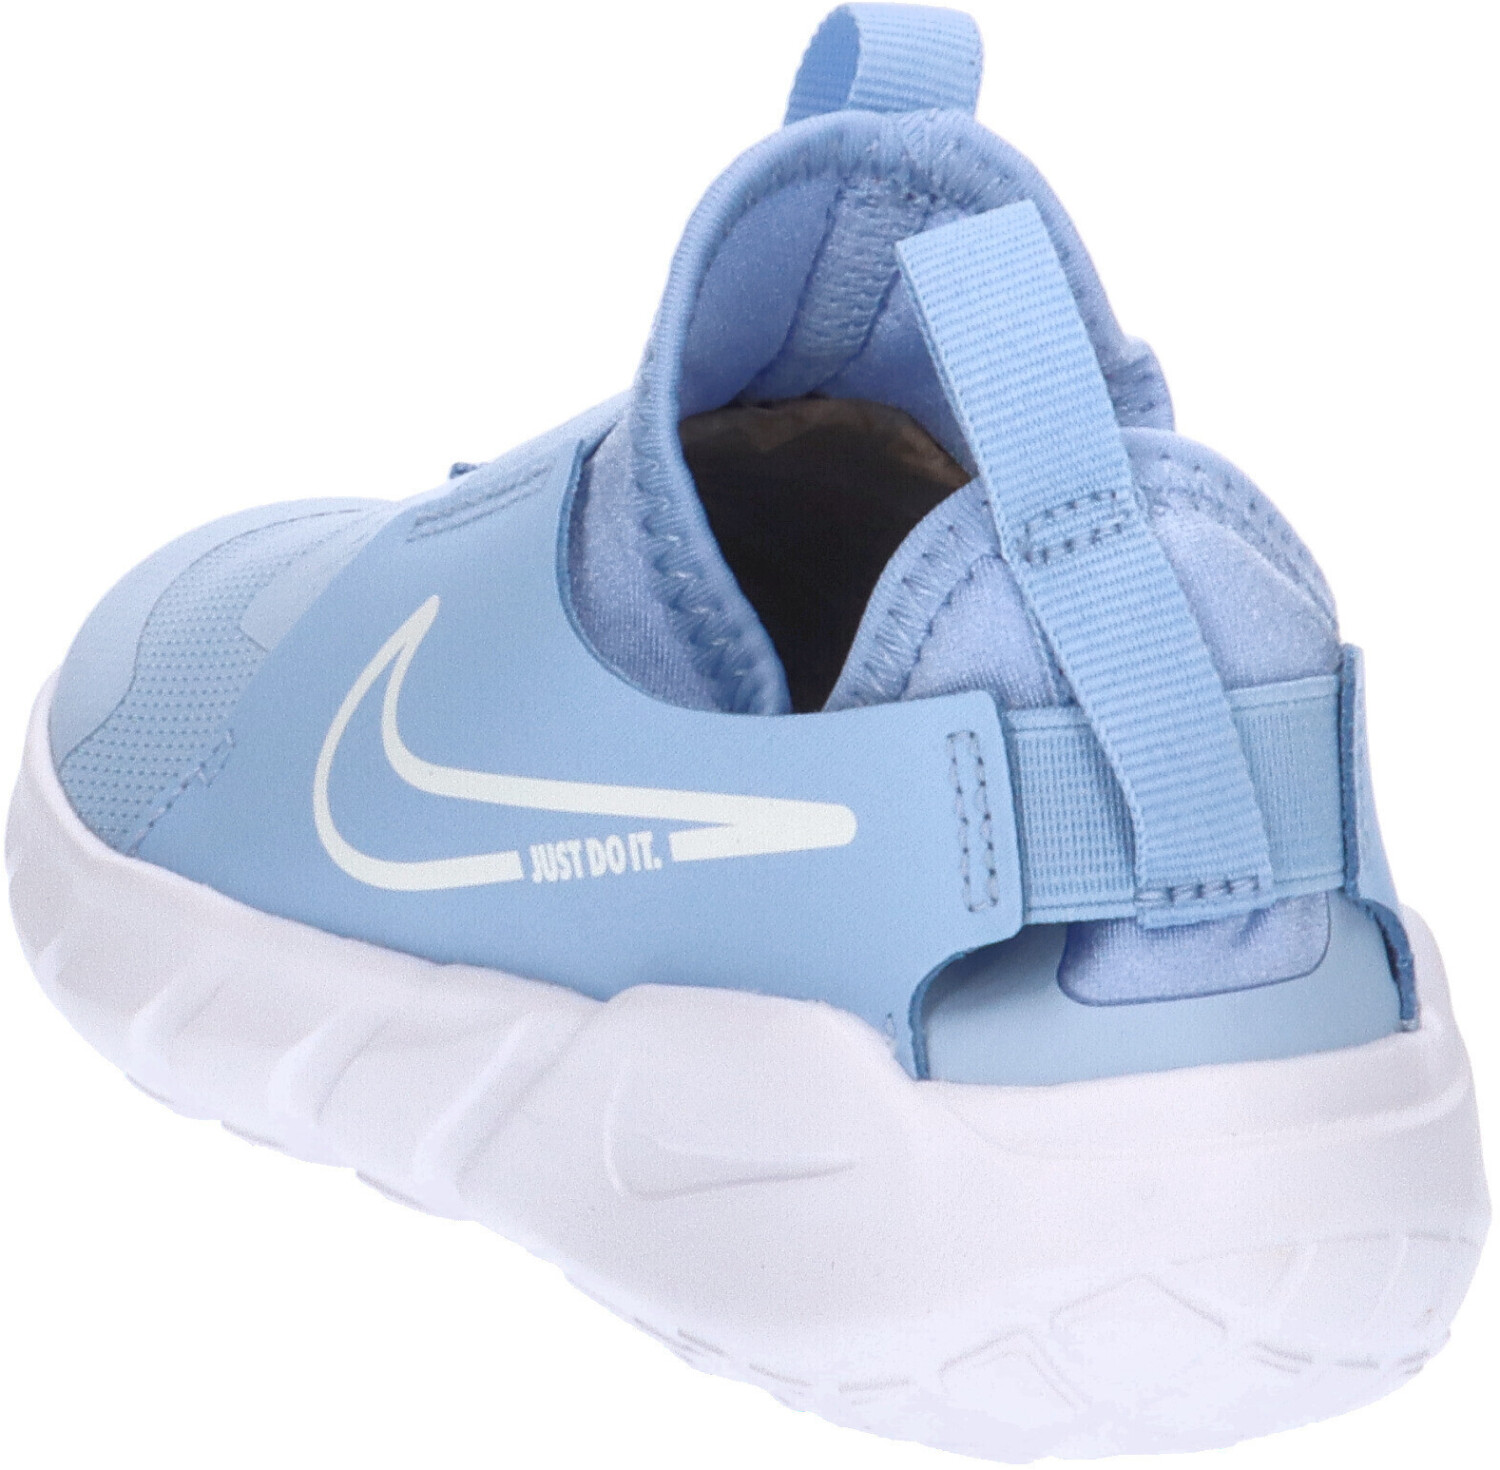 Flex – Best Nike 2 Buy Deals £23.00 Runner bliss/white from Kids cobalt on (Today)